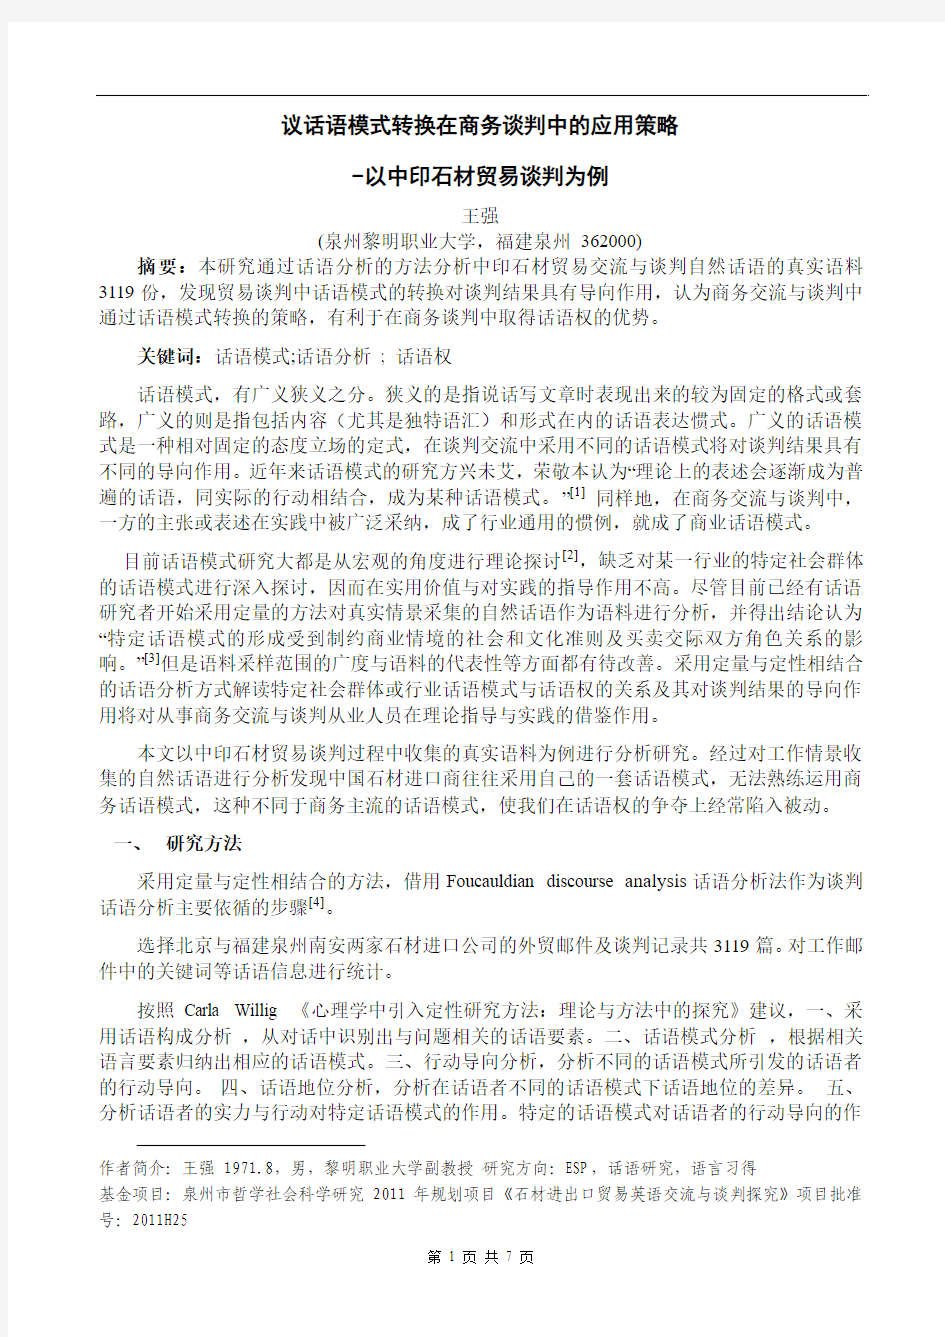 王强-话语模式转换在谈判中的作用-以中印石材贸易谈判为例